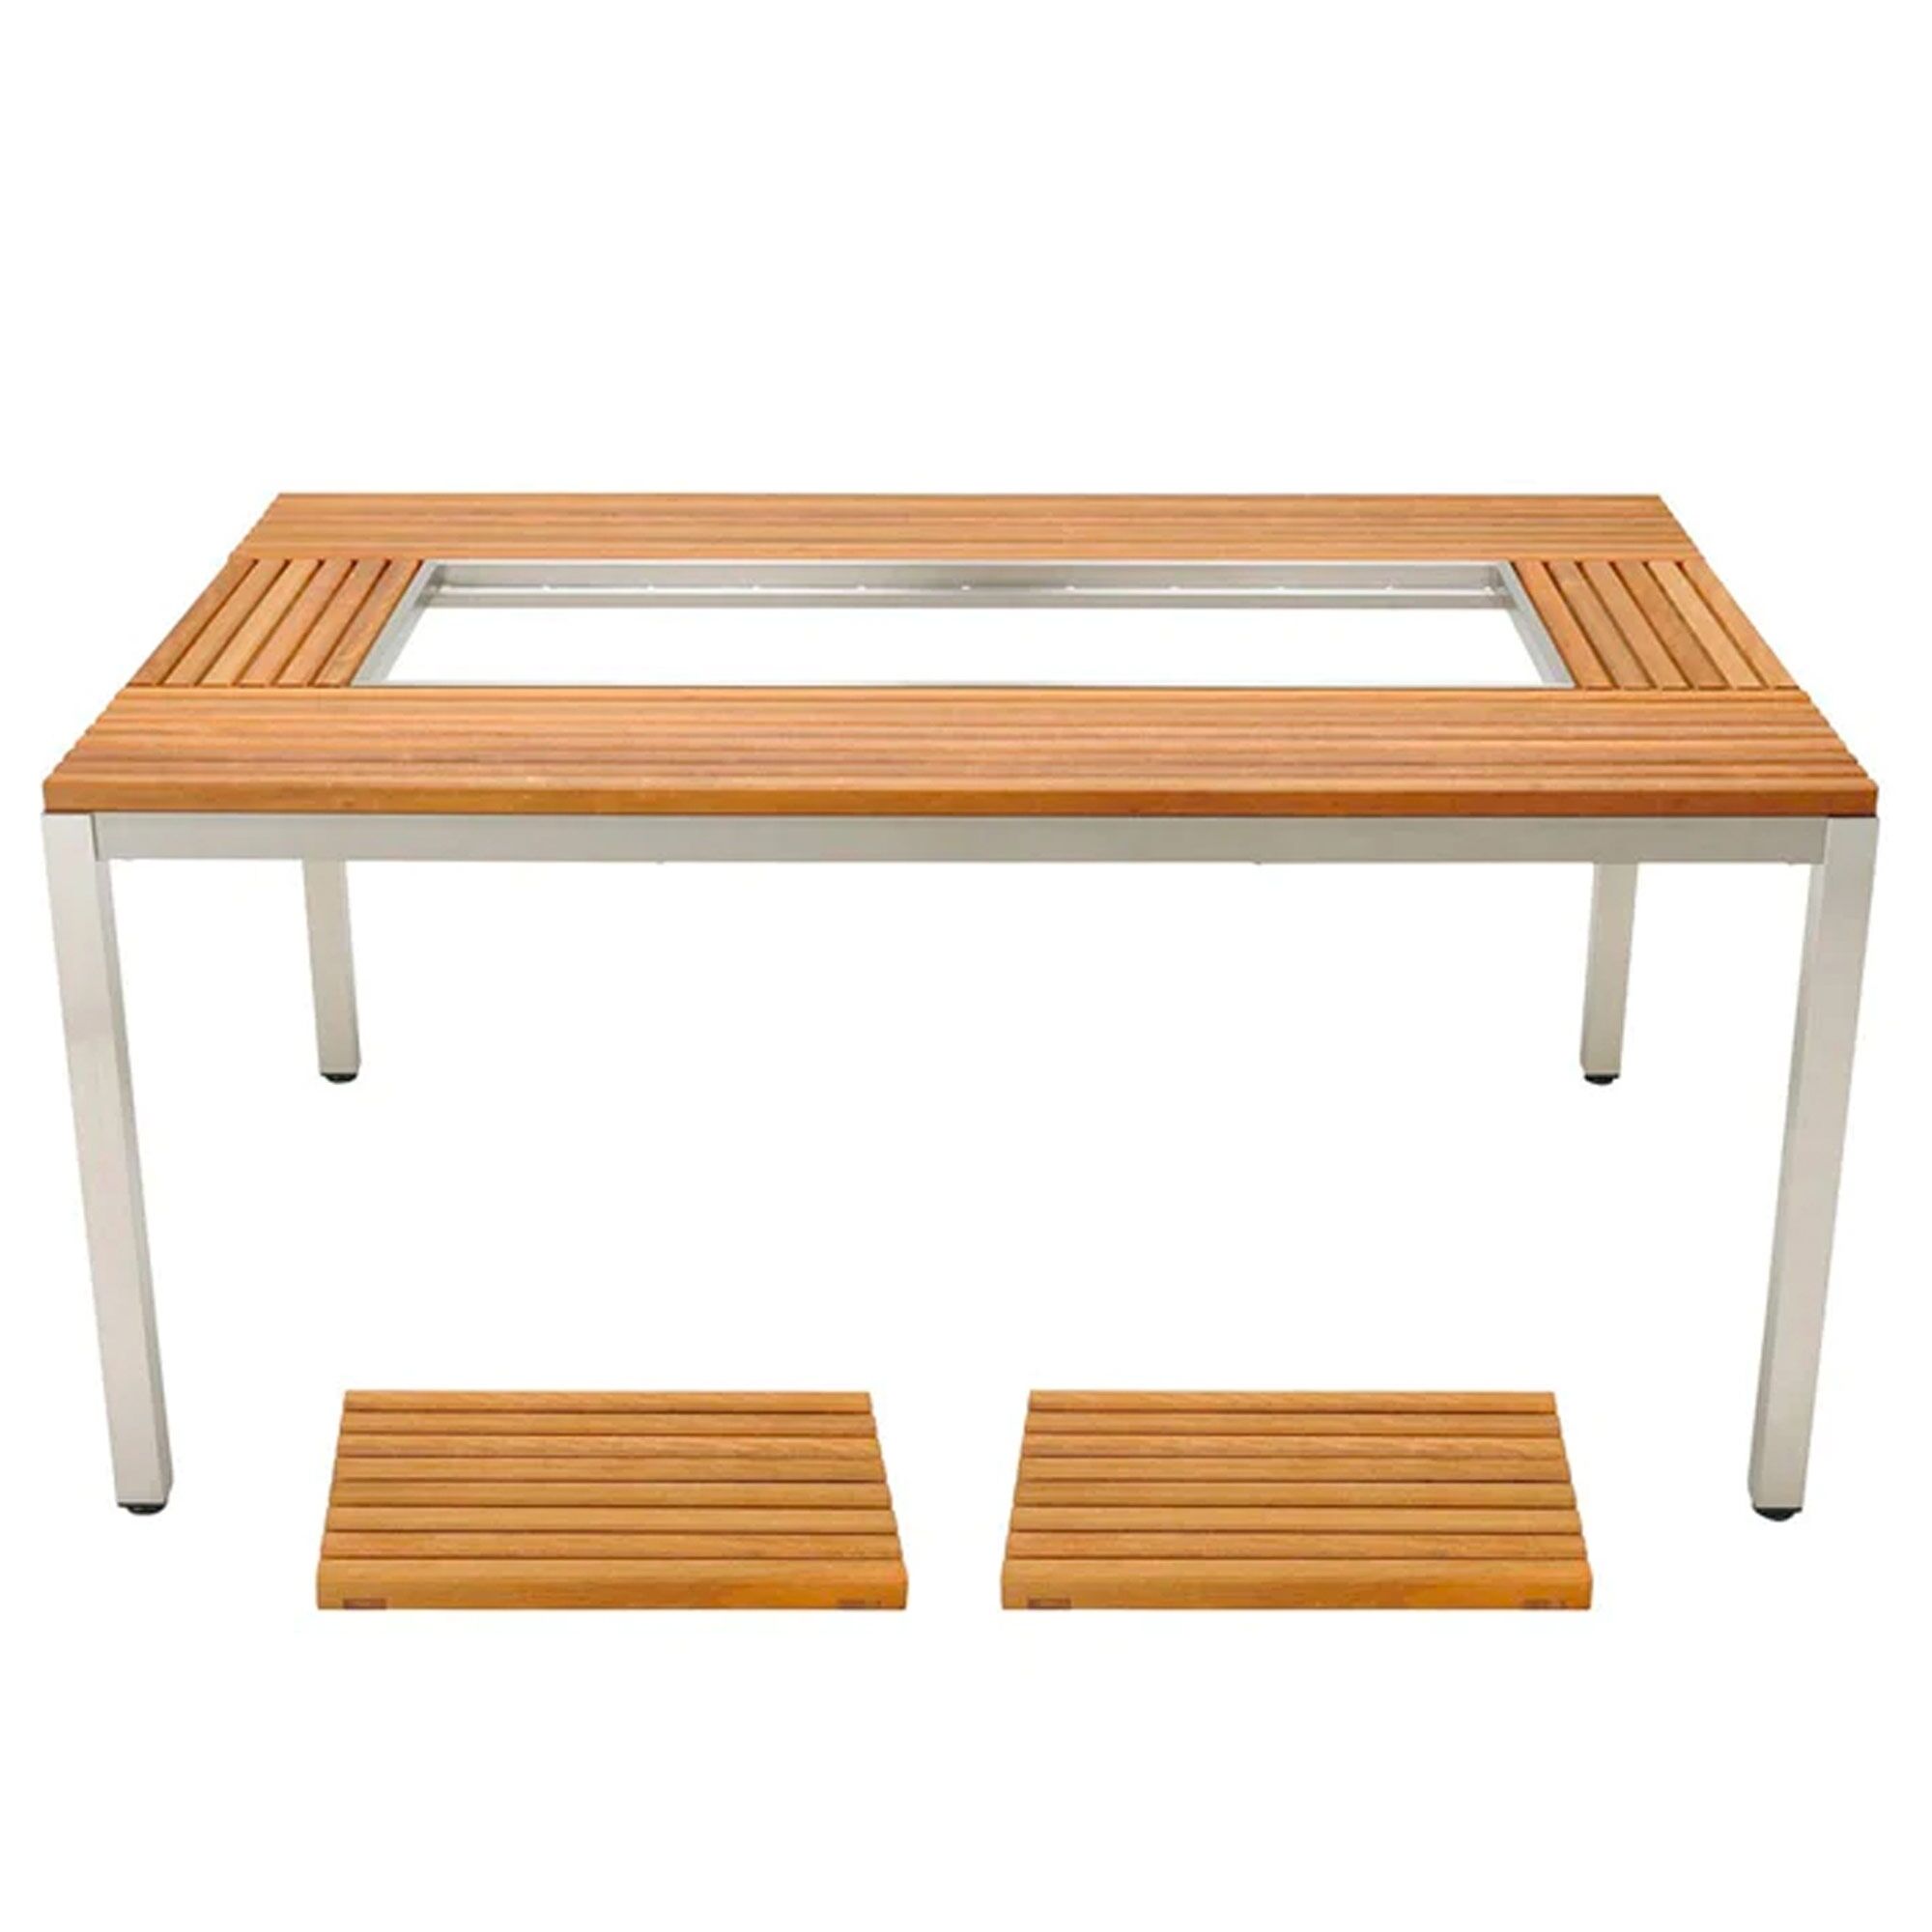 62571 Garden Unit Table Set-